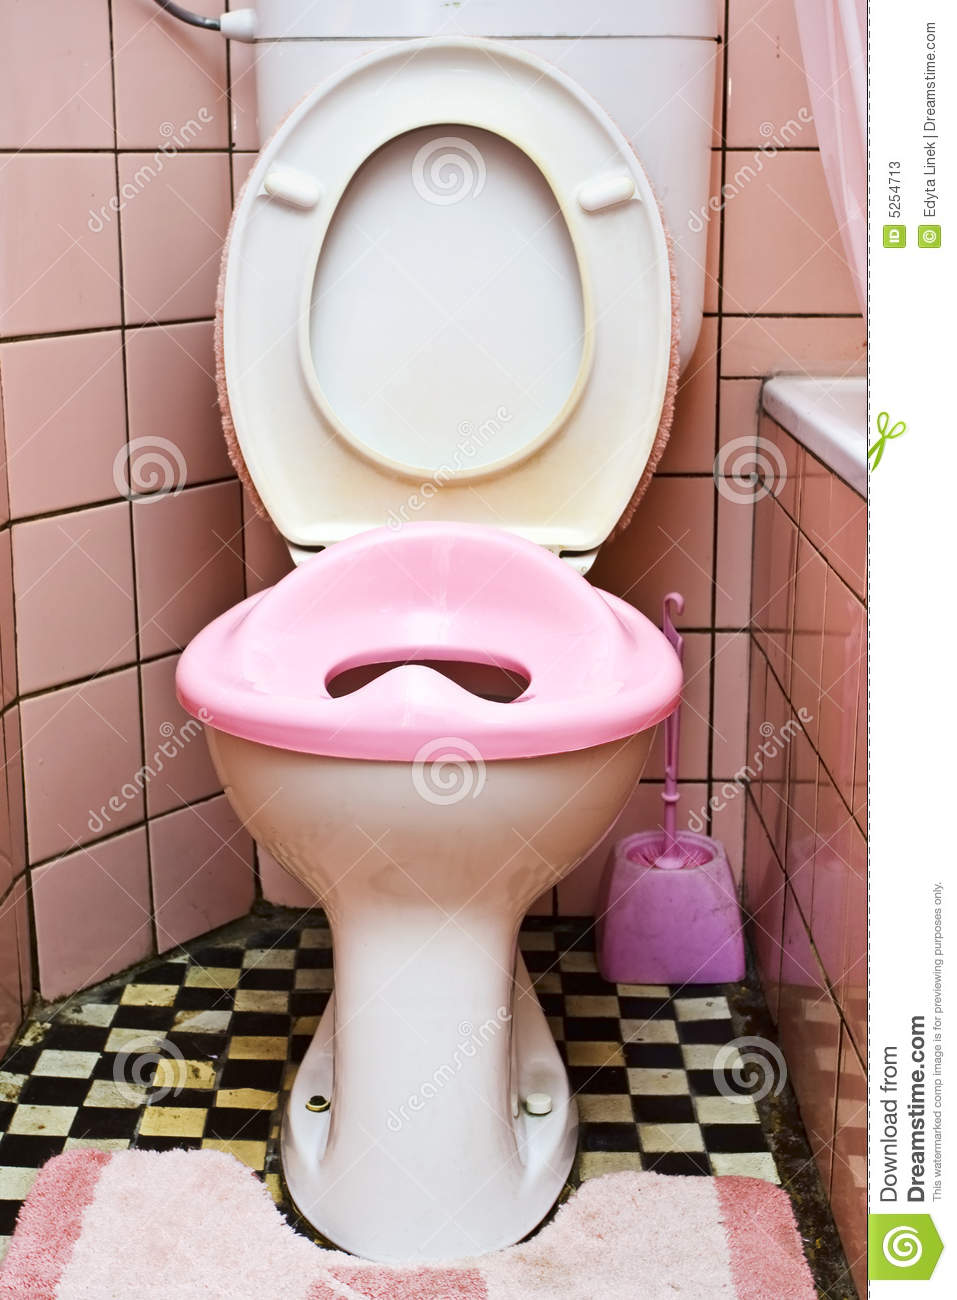 Dirty Toilet Stock Photos   Image  5254713